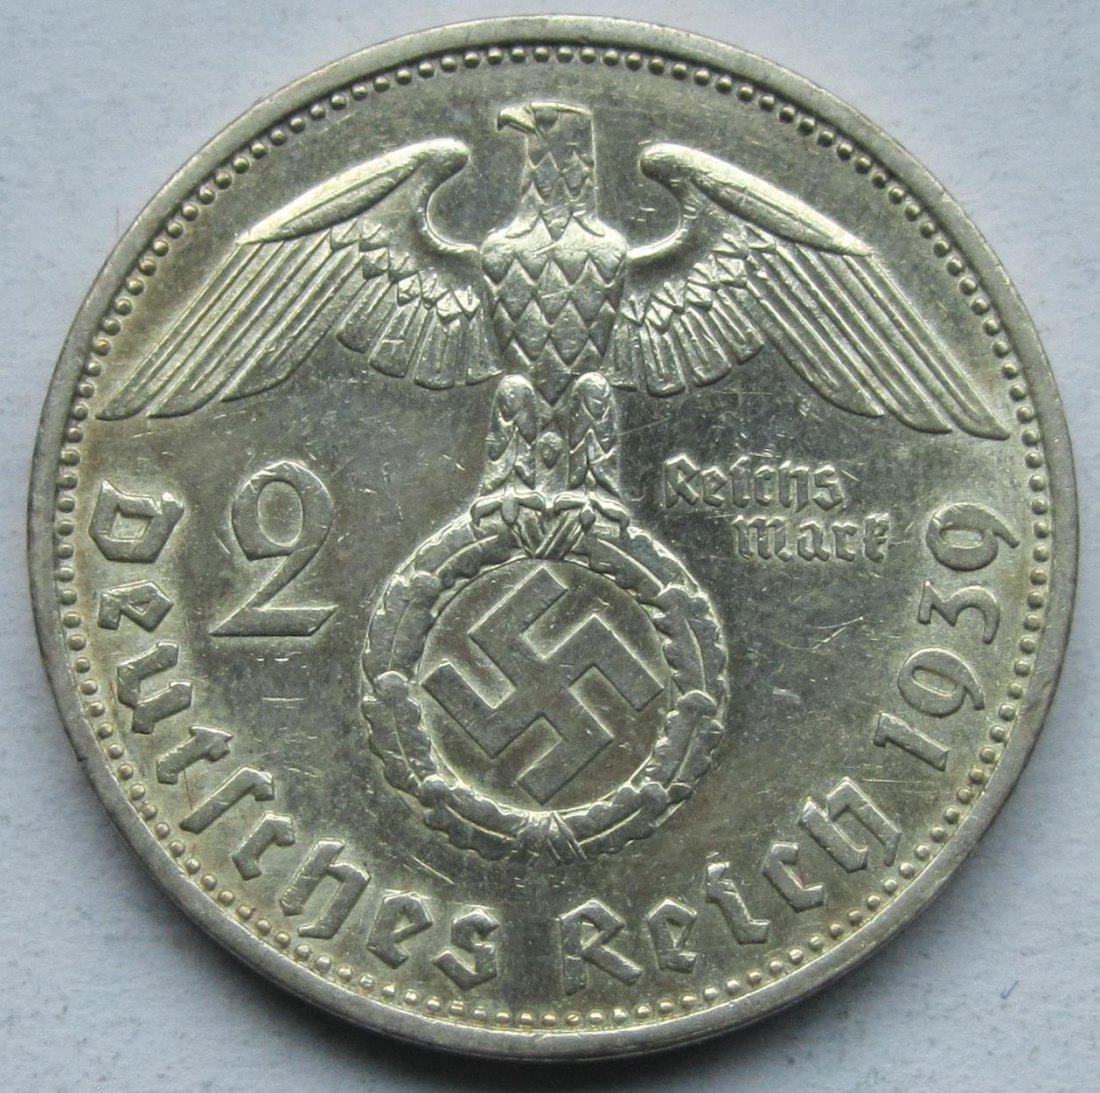  Deutsches Reich: 2 Mark 1939 E   